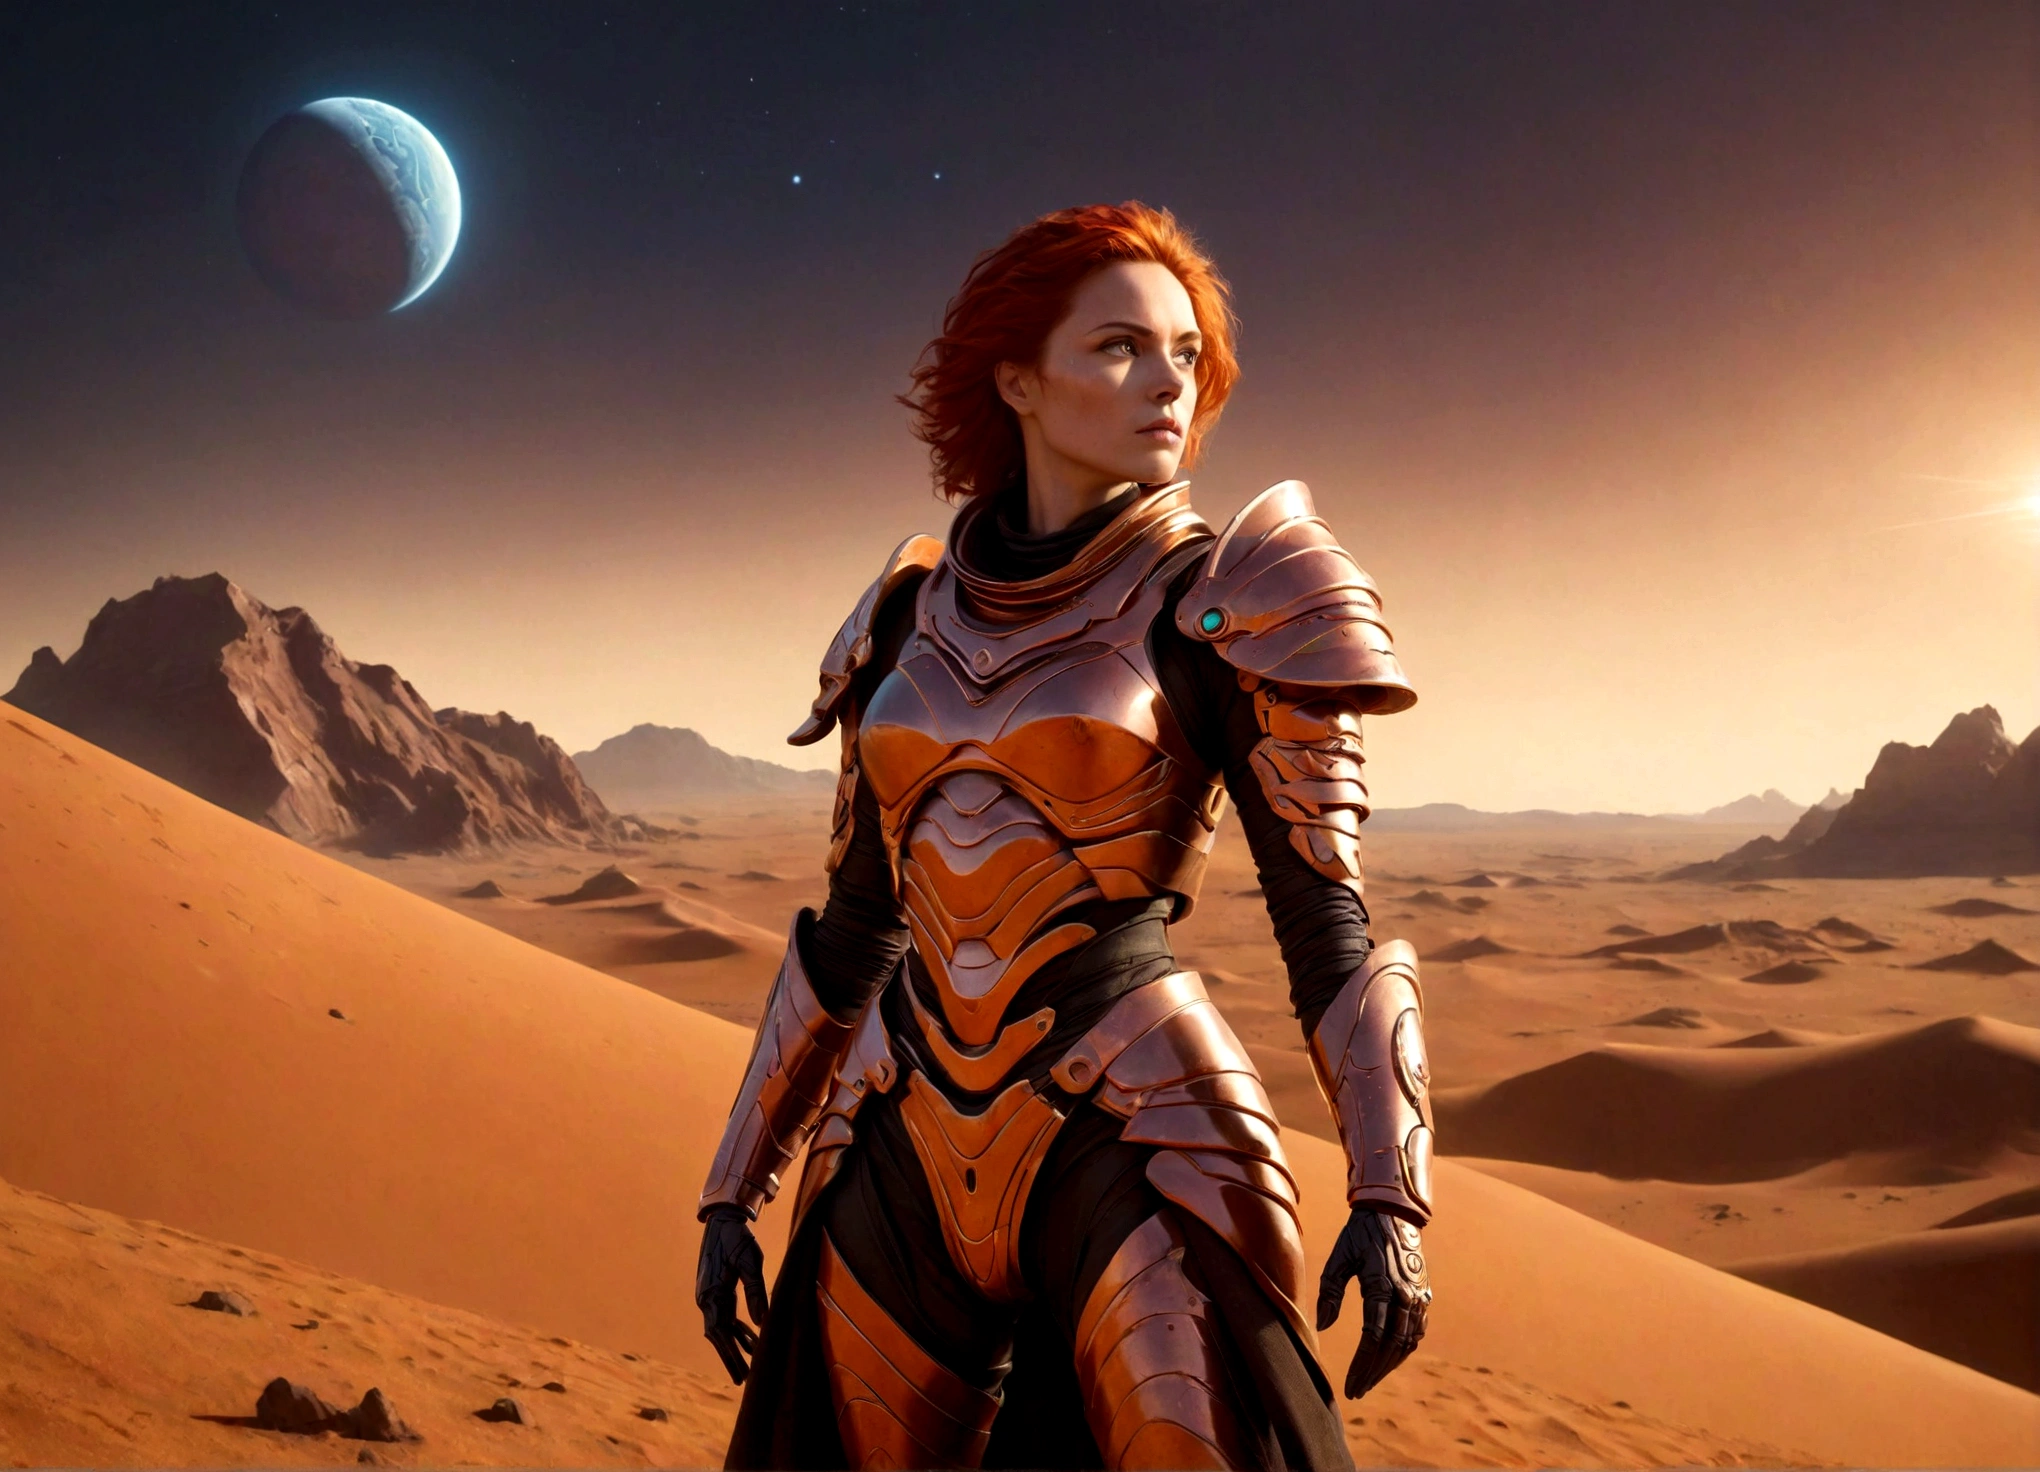 uma rainha guerreira em Marte, Estilo duna, armadura altamente detalhada, paisagem marciana futurista, iluminação dramática, composição cinematográfica, detalhes mecânicos intrincados, cores vibrantes, ficção científica, fotorrealista